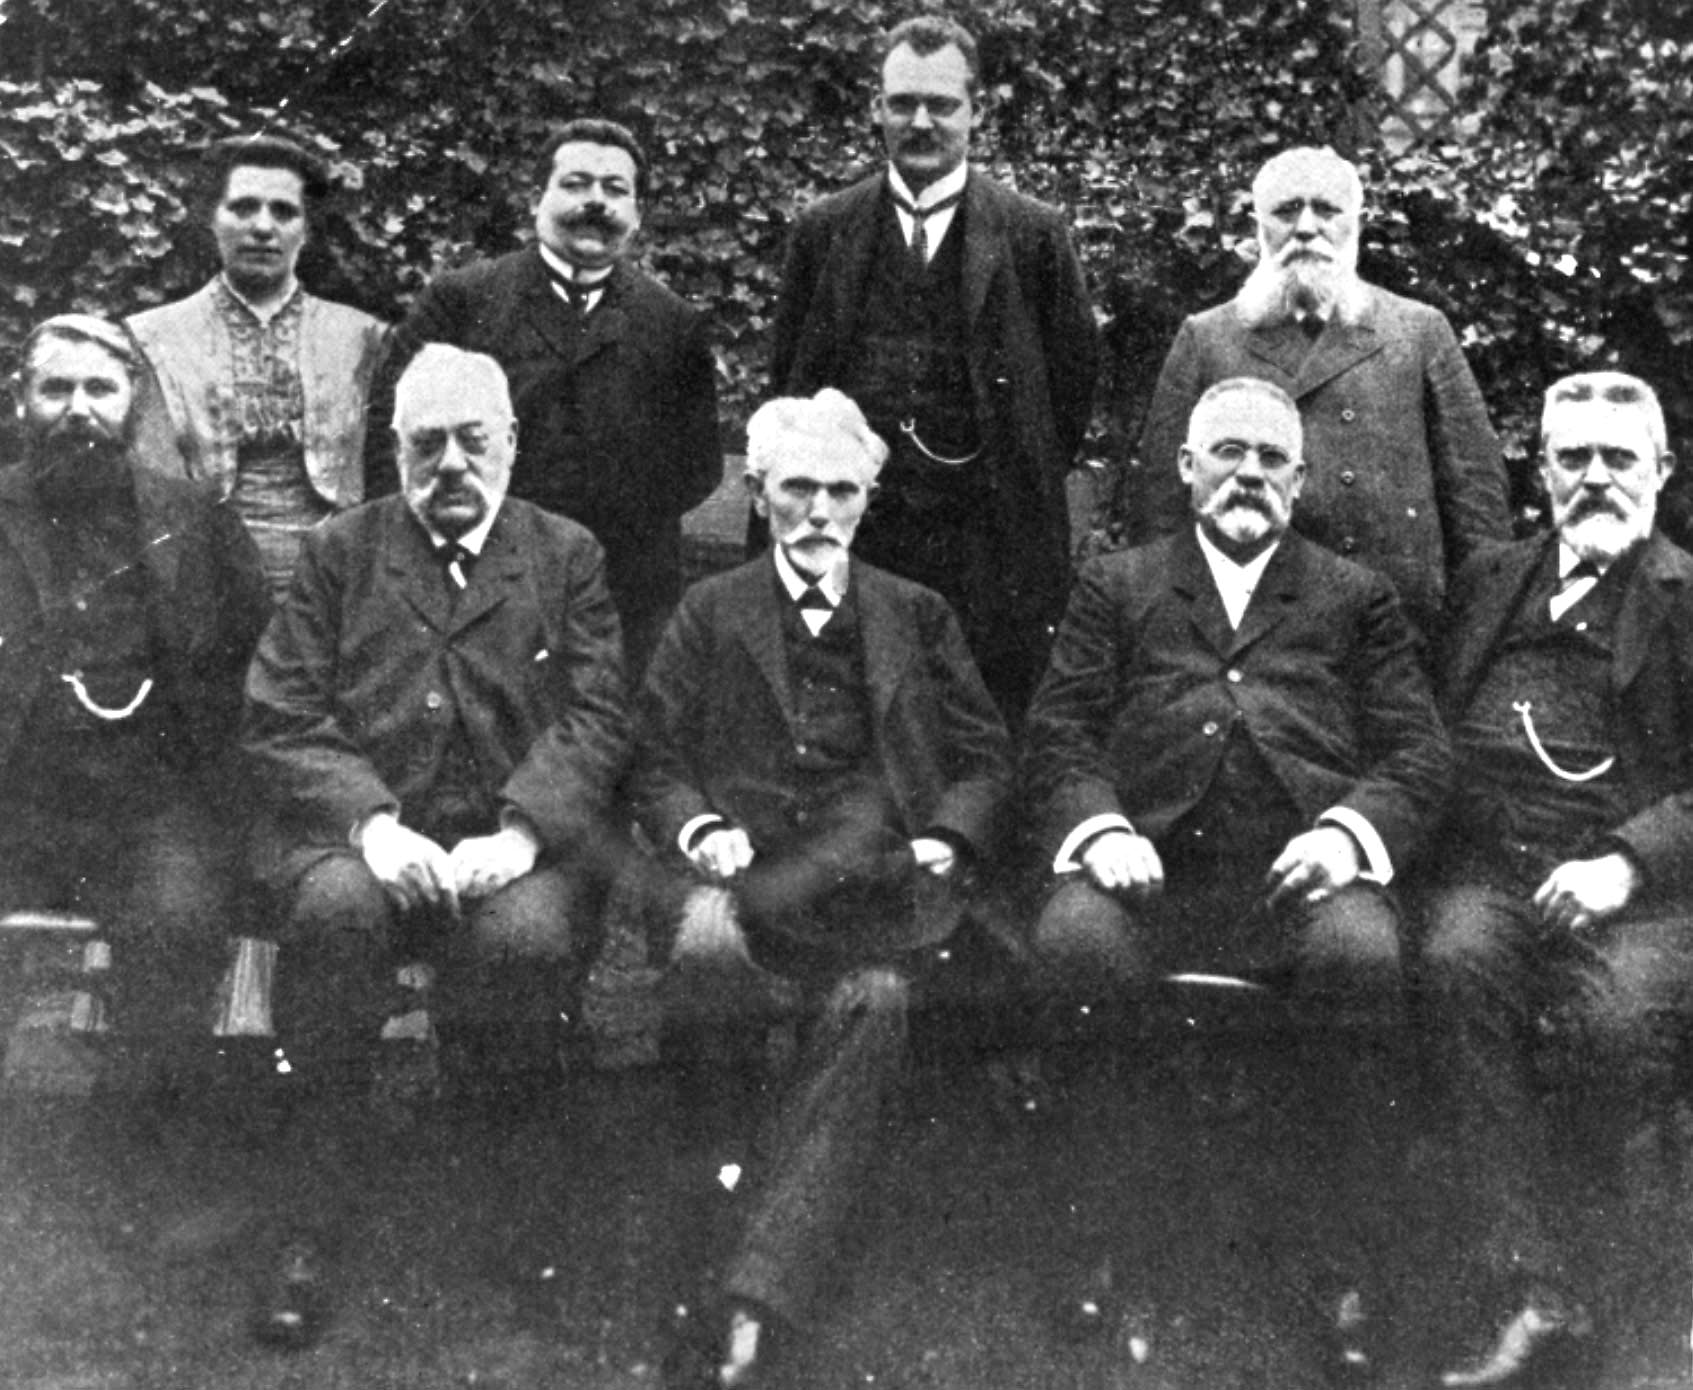 Der SPD-Parteivorstand 1909. V.l.: oben: Luise Zietz, Friedrich Ebert, Hermann Müller, Robert Wengels; unten: Karl Alwin Gerisch, Paul Singer, August Bebel, Wilhelm Pfannkuch, Hermann Molkenbuhr. 